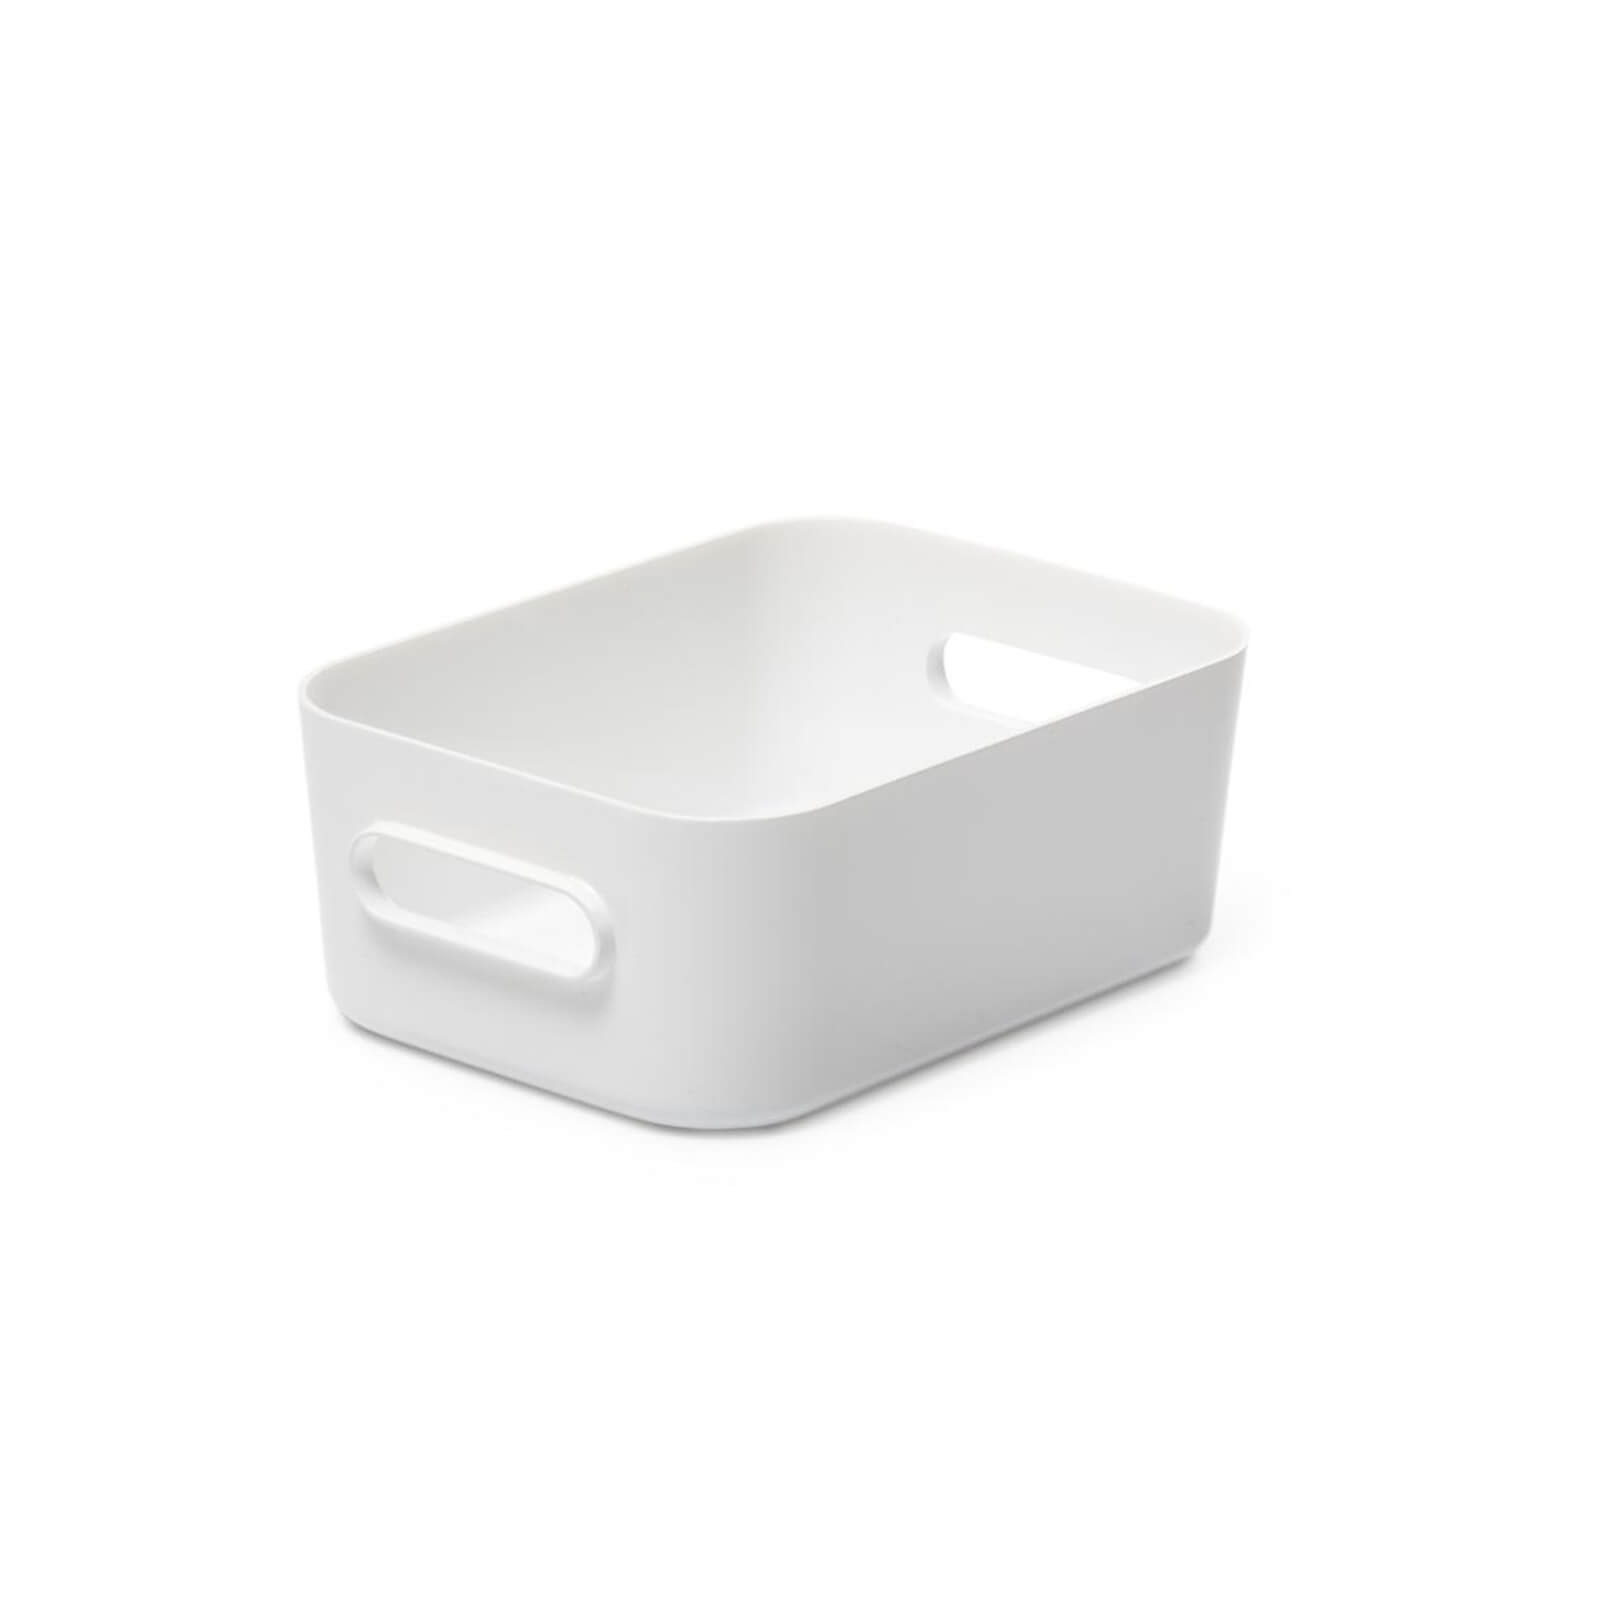 SmartStore Compact Small Box - White